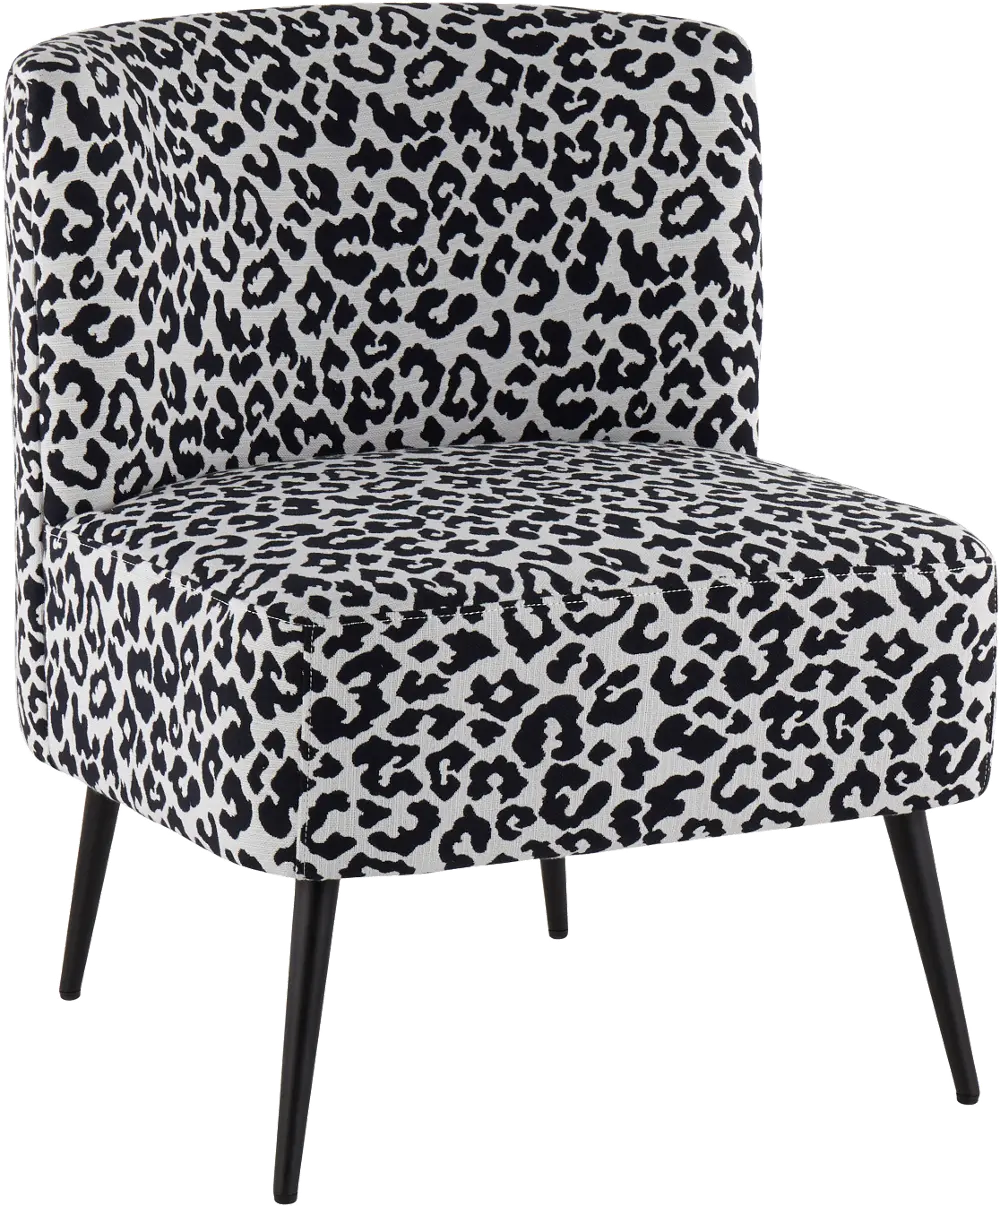 CH-FRANLEP BKBK Luna Black Leopard Accent Chair-1